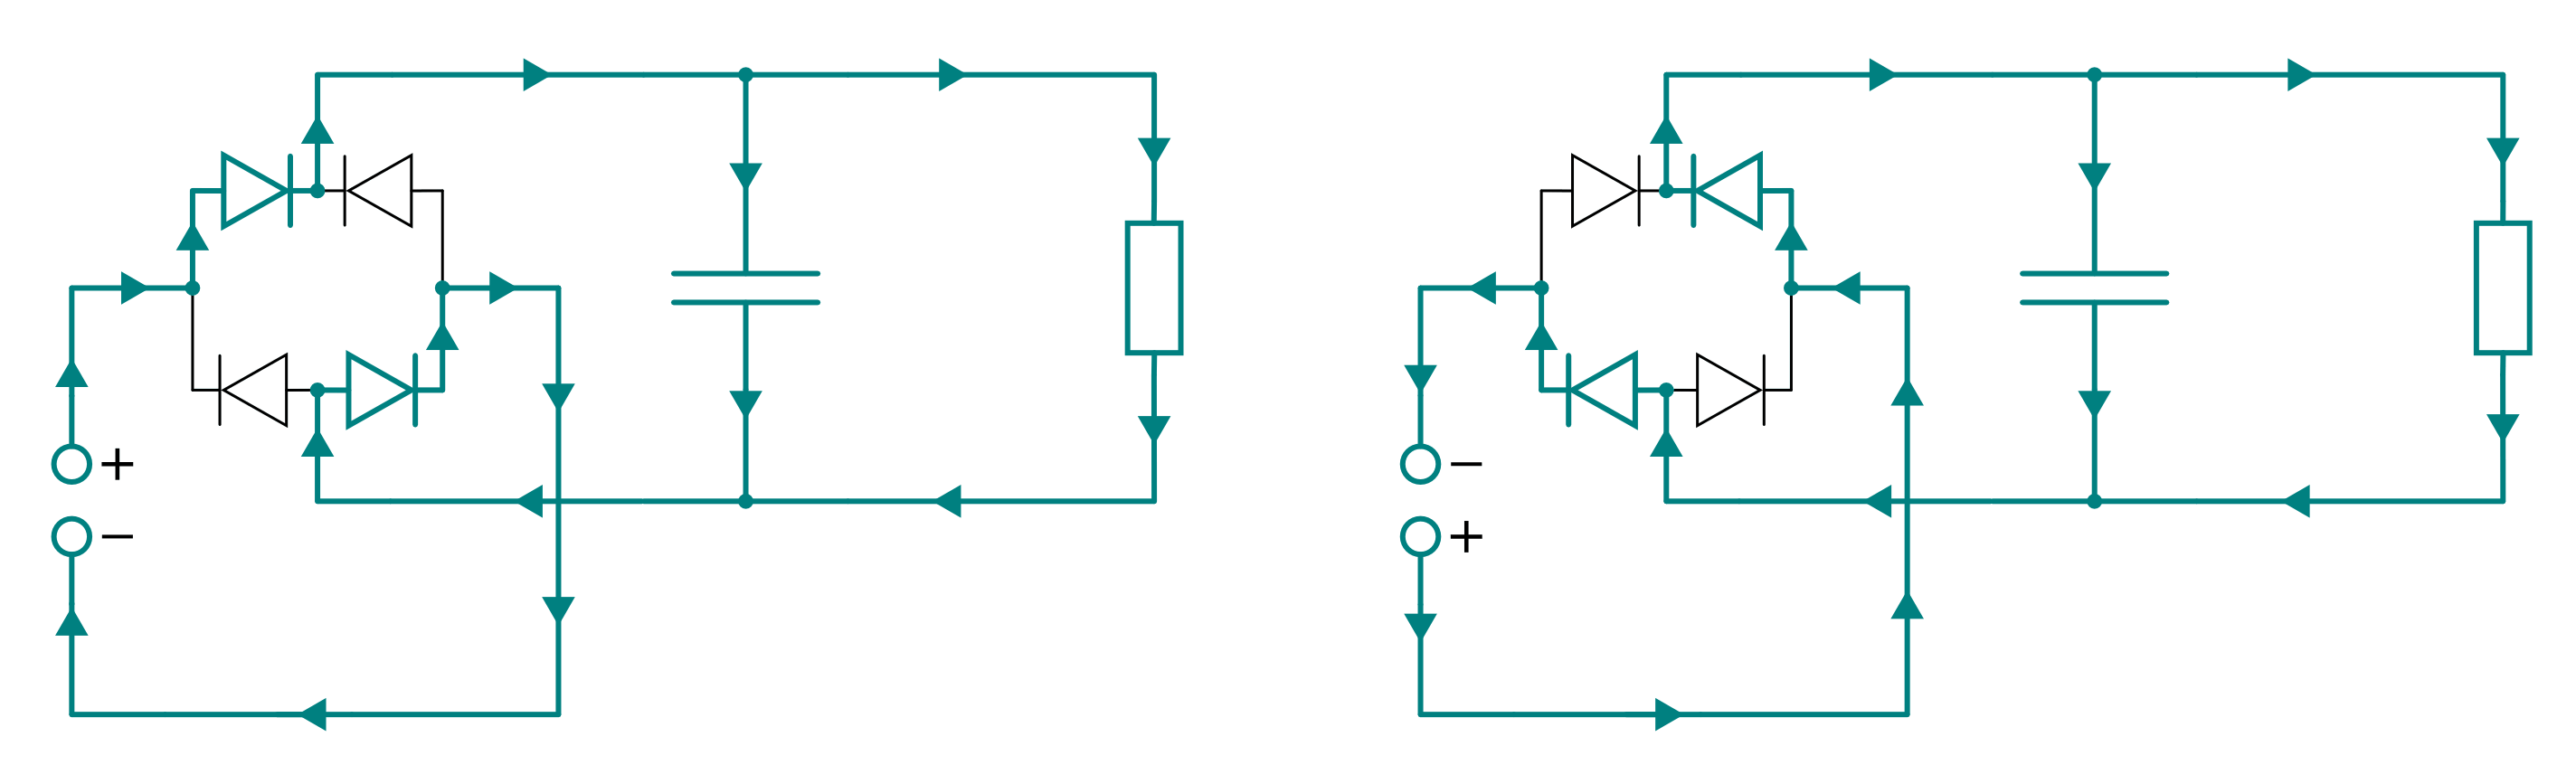 fig-gleichrichter-zweiweg-funktionsweise